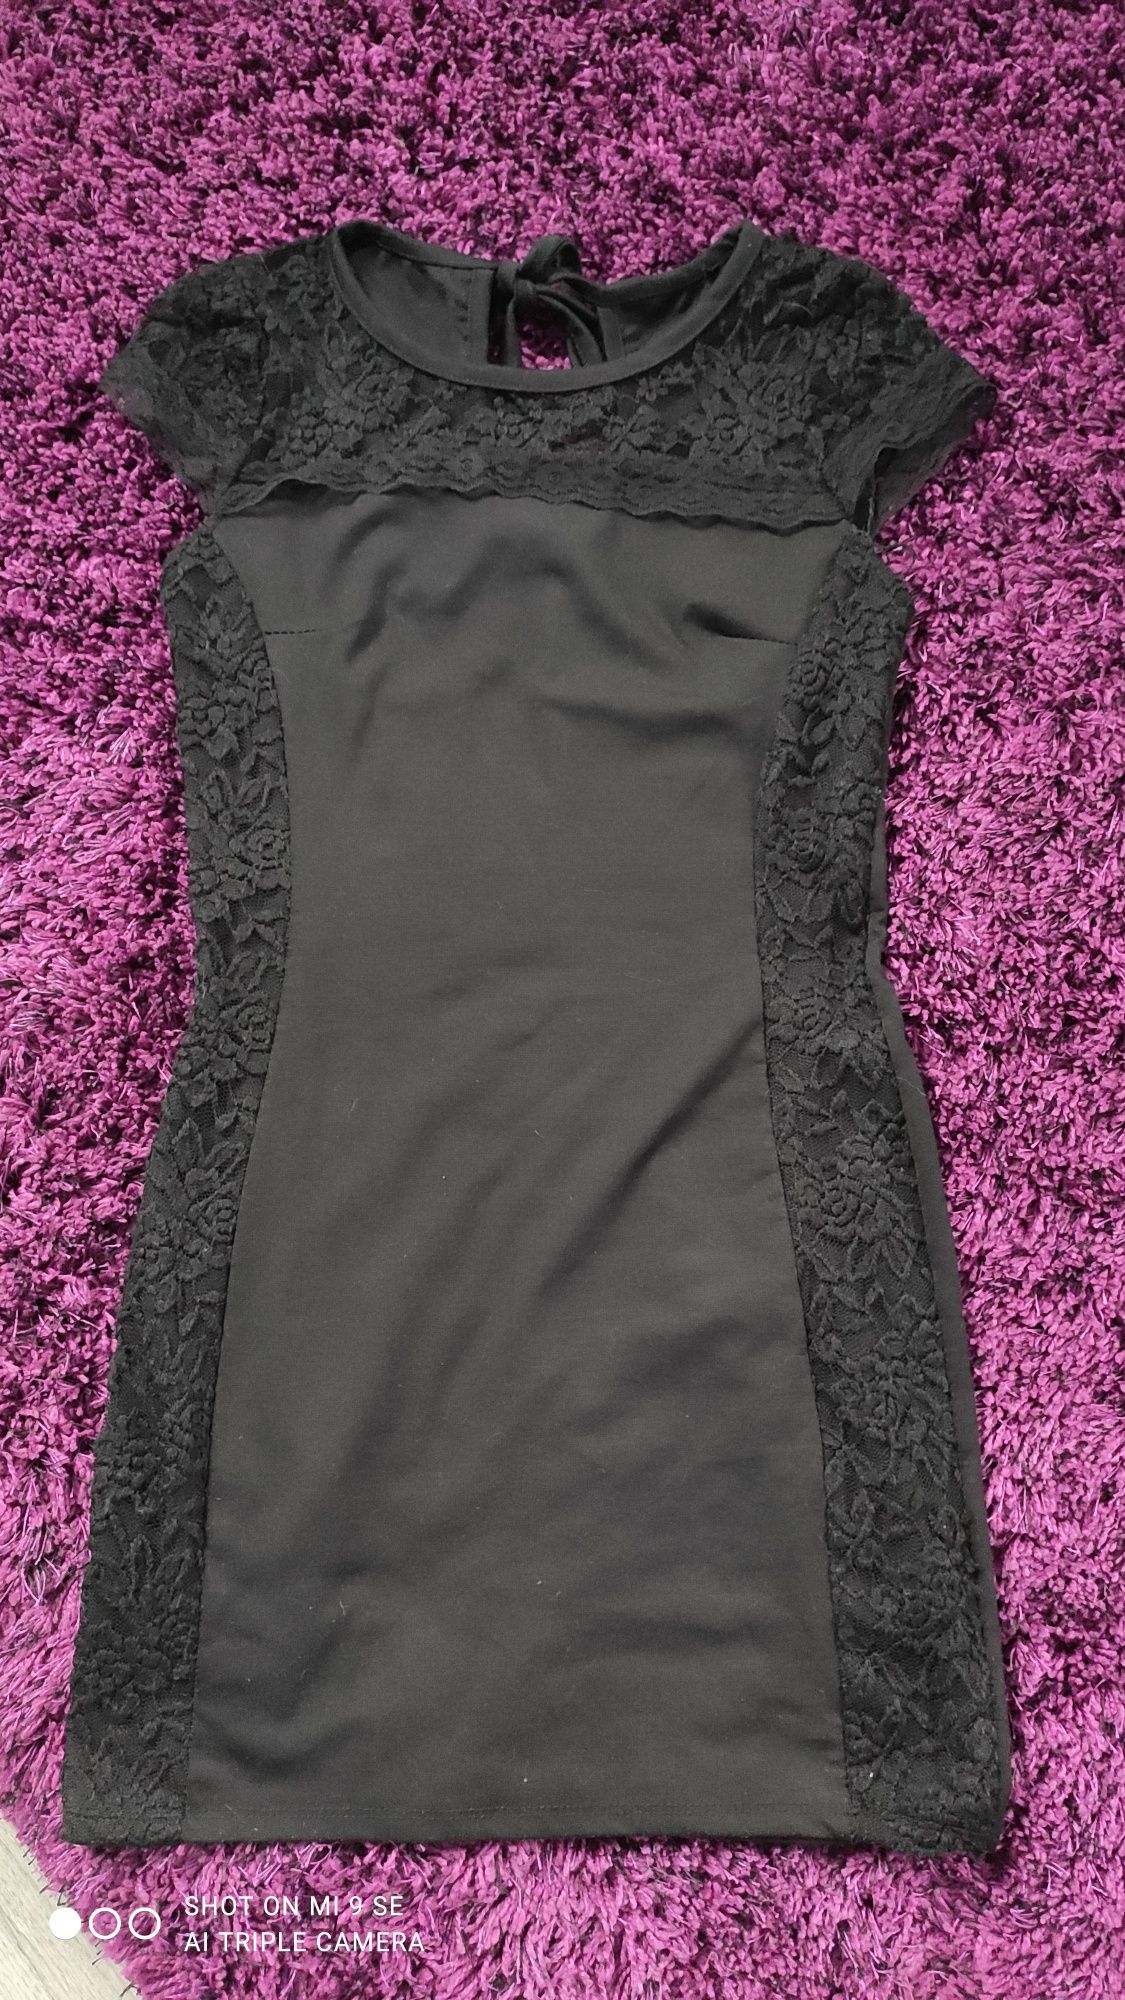 Sukienka czarna rozmiar S